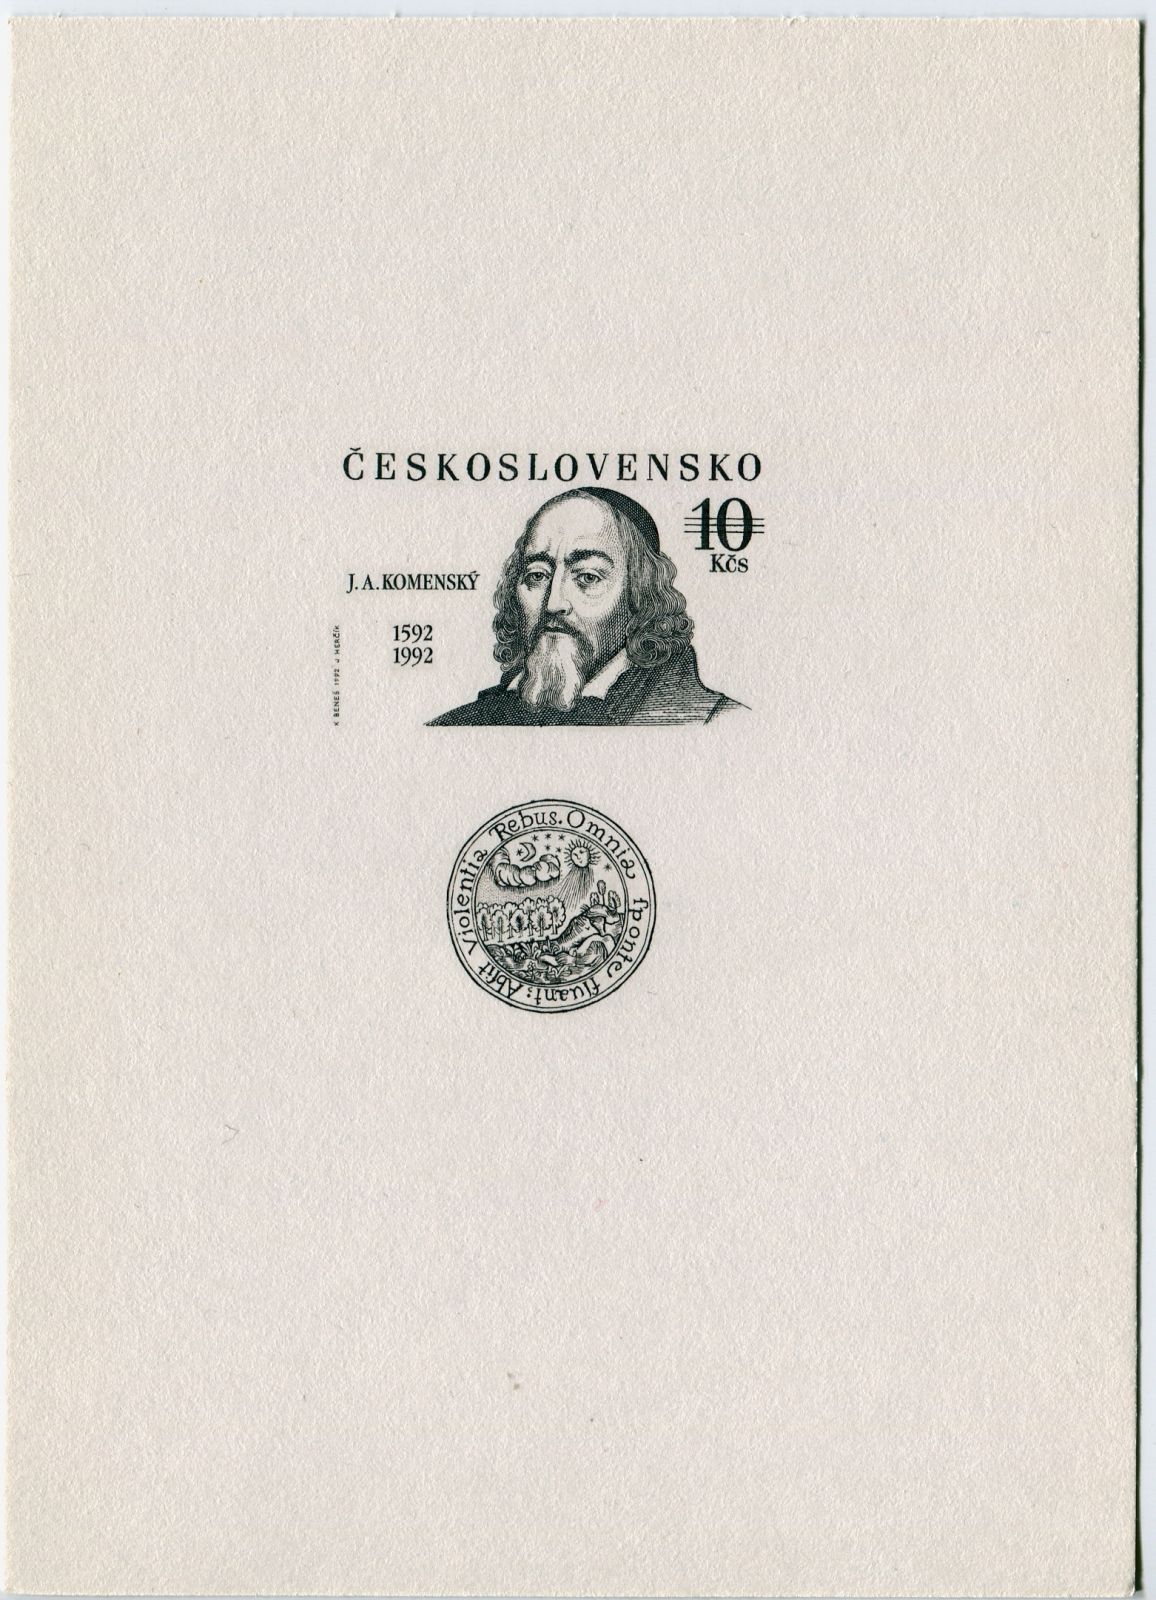 Českosloveská pošta (1992) PT 24 - Jan Ámos Komenský